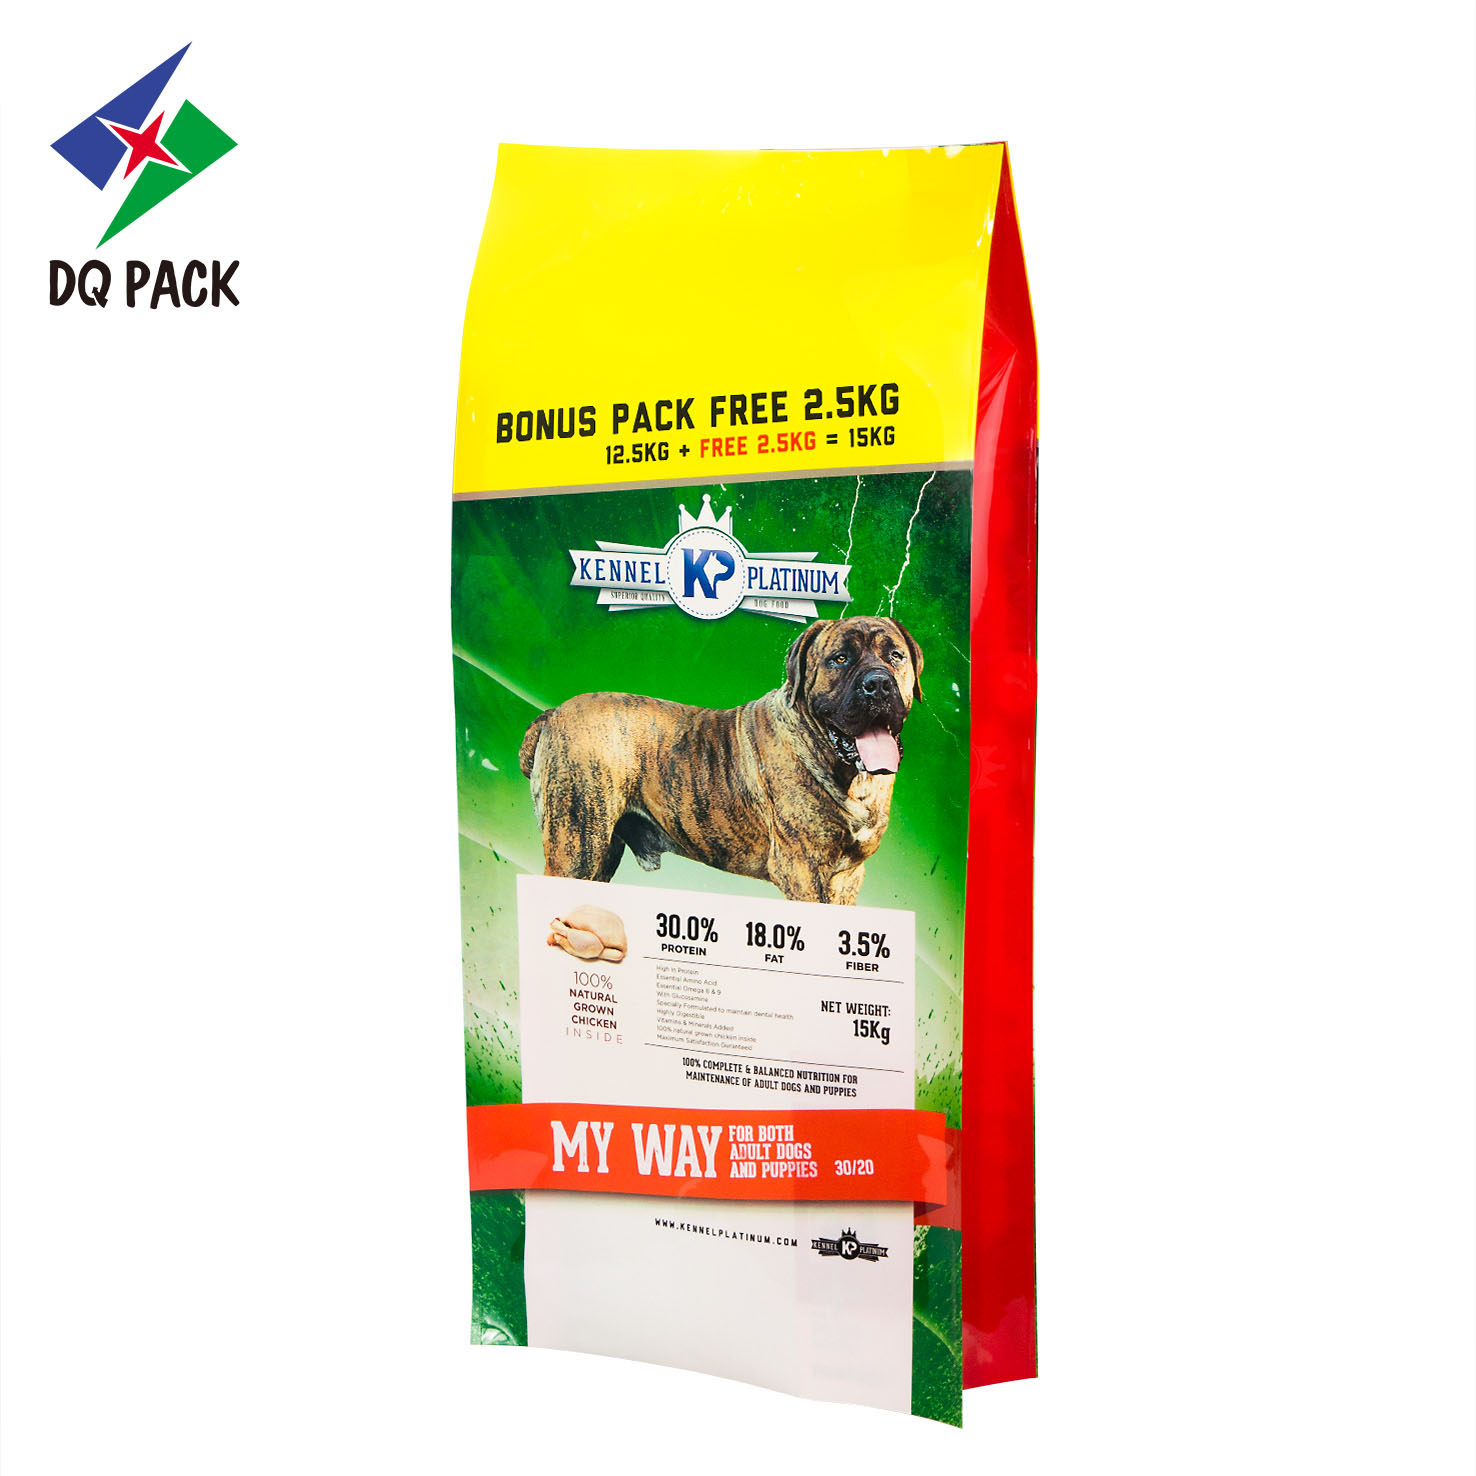 Paquete DQ, bolsa de plástico con fuelle lateral de alta calidad, bolsa de alimentos para mascotas con impresión colorida, bolsa de polietileno con sellado térmico de capacidad personalizada